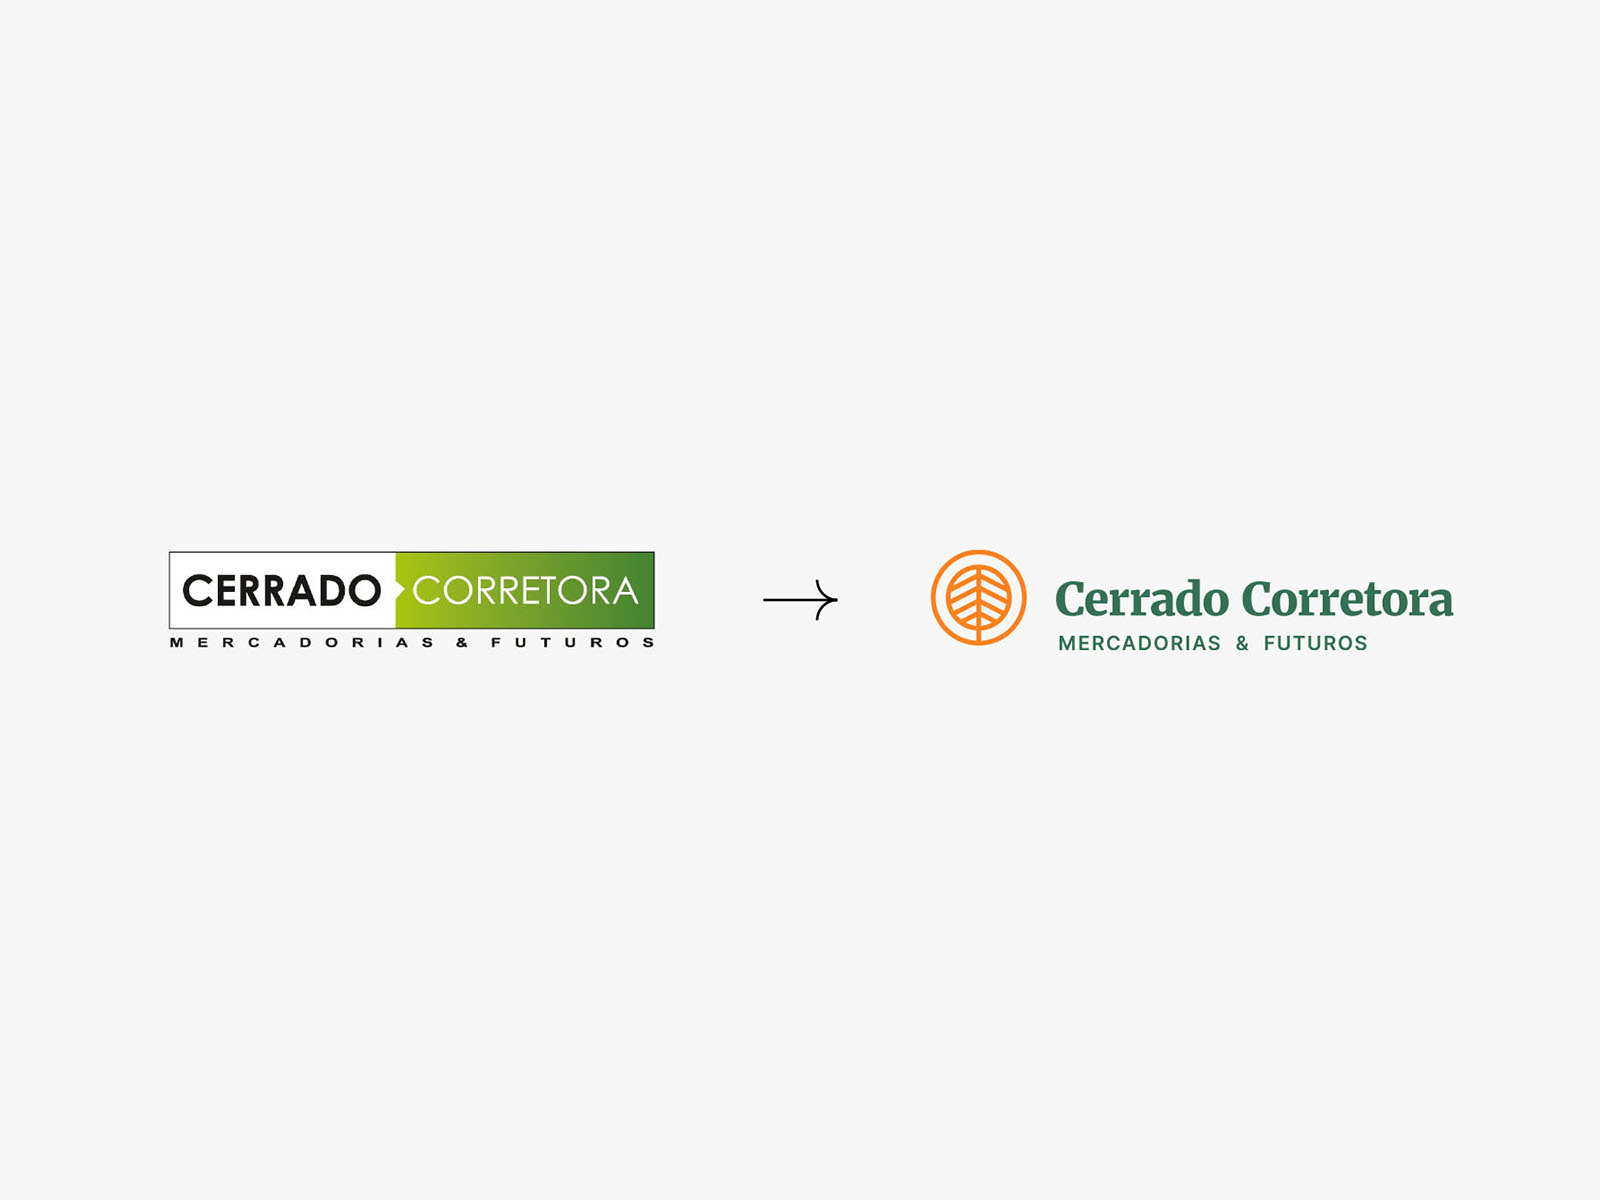 Cerrado Corretora - Before and After by João Matheus on Dribbble